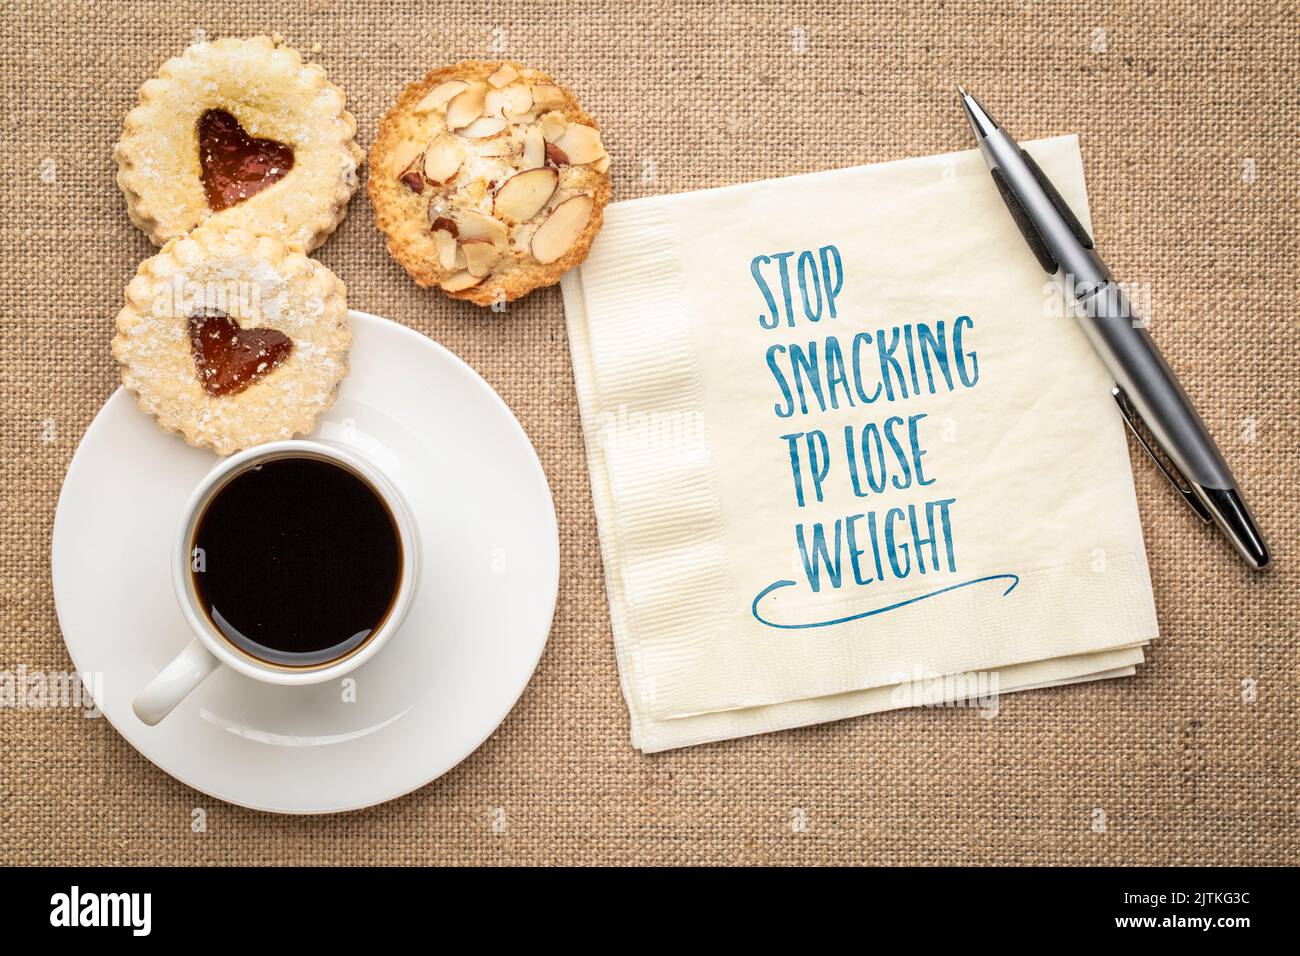 Stoppen Sie Naschen, um Gewicht zu verlieren. Inspirierende Erinnerungsnotiz auf einer Serviette mit Kaffee und Keksen. Gesunde Lebensweise und Ernährung Konzept. Stockfoto